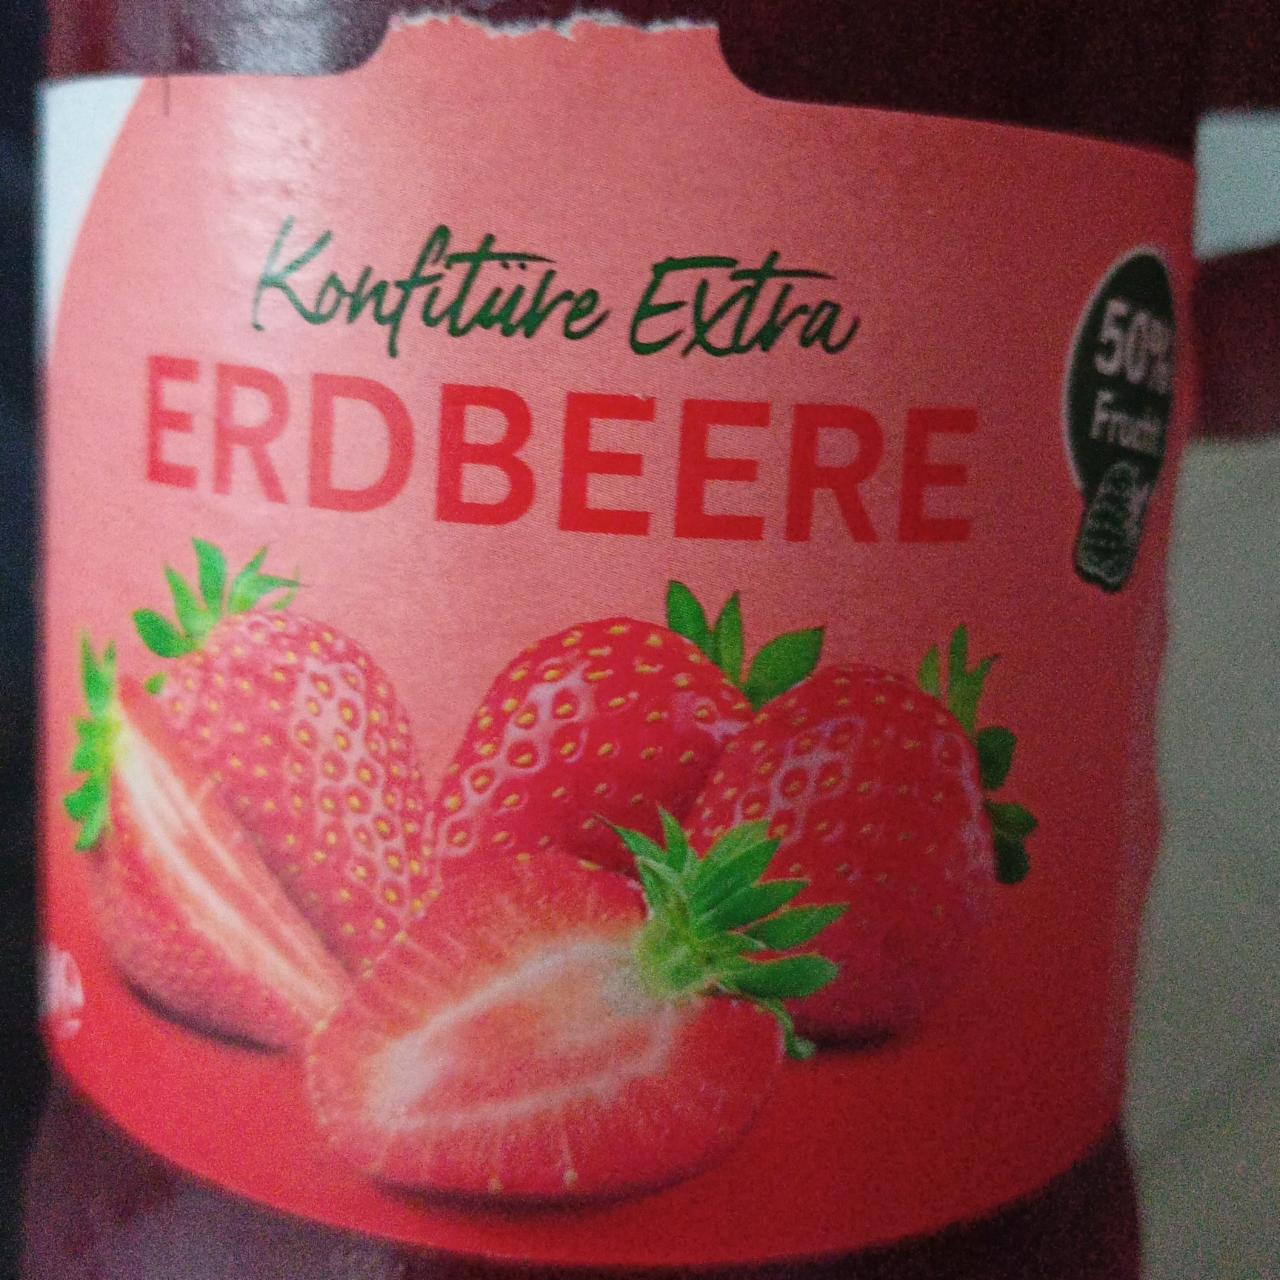 Fotografie - Konfitüre Extra Erdbeere K-Classic